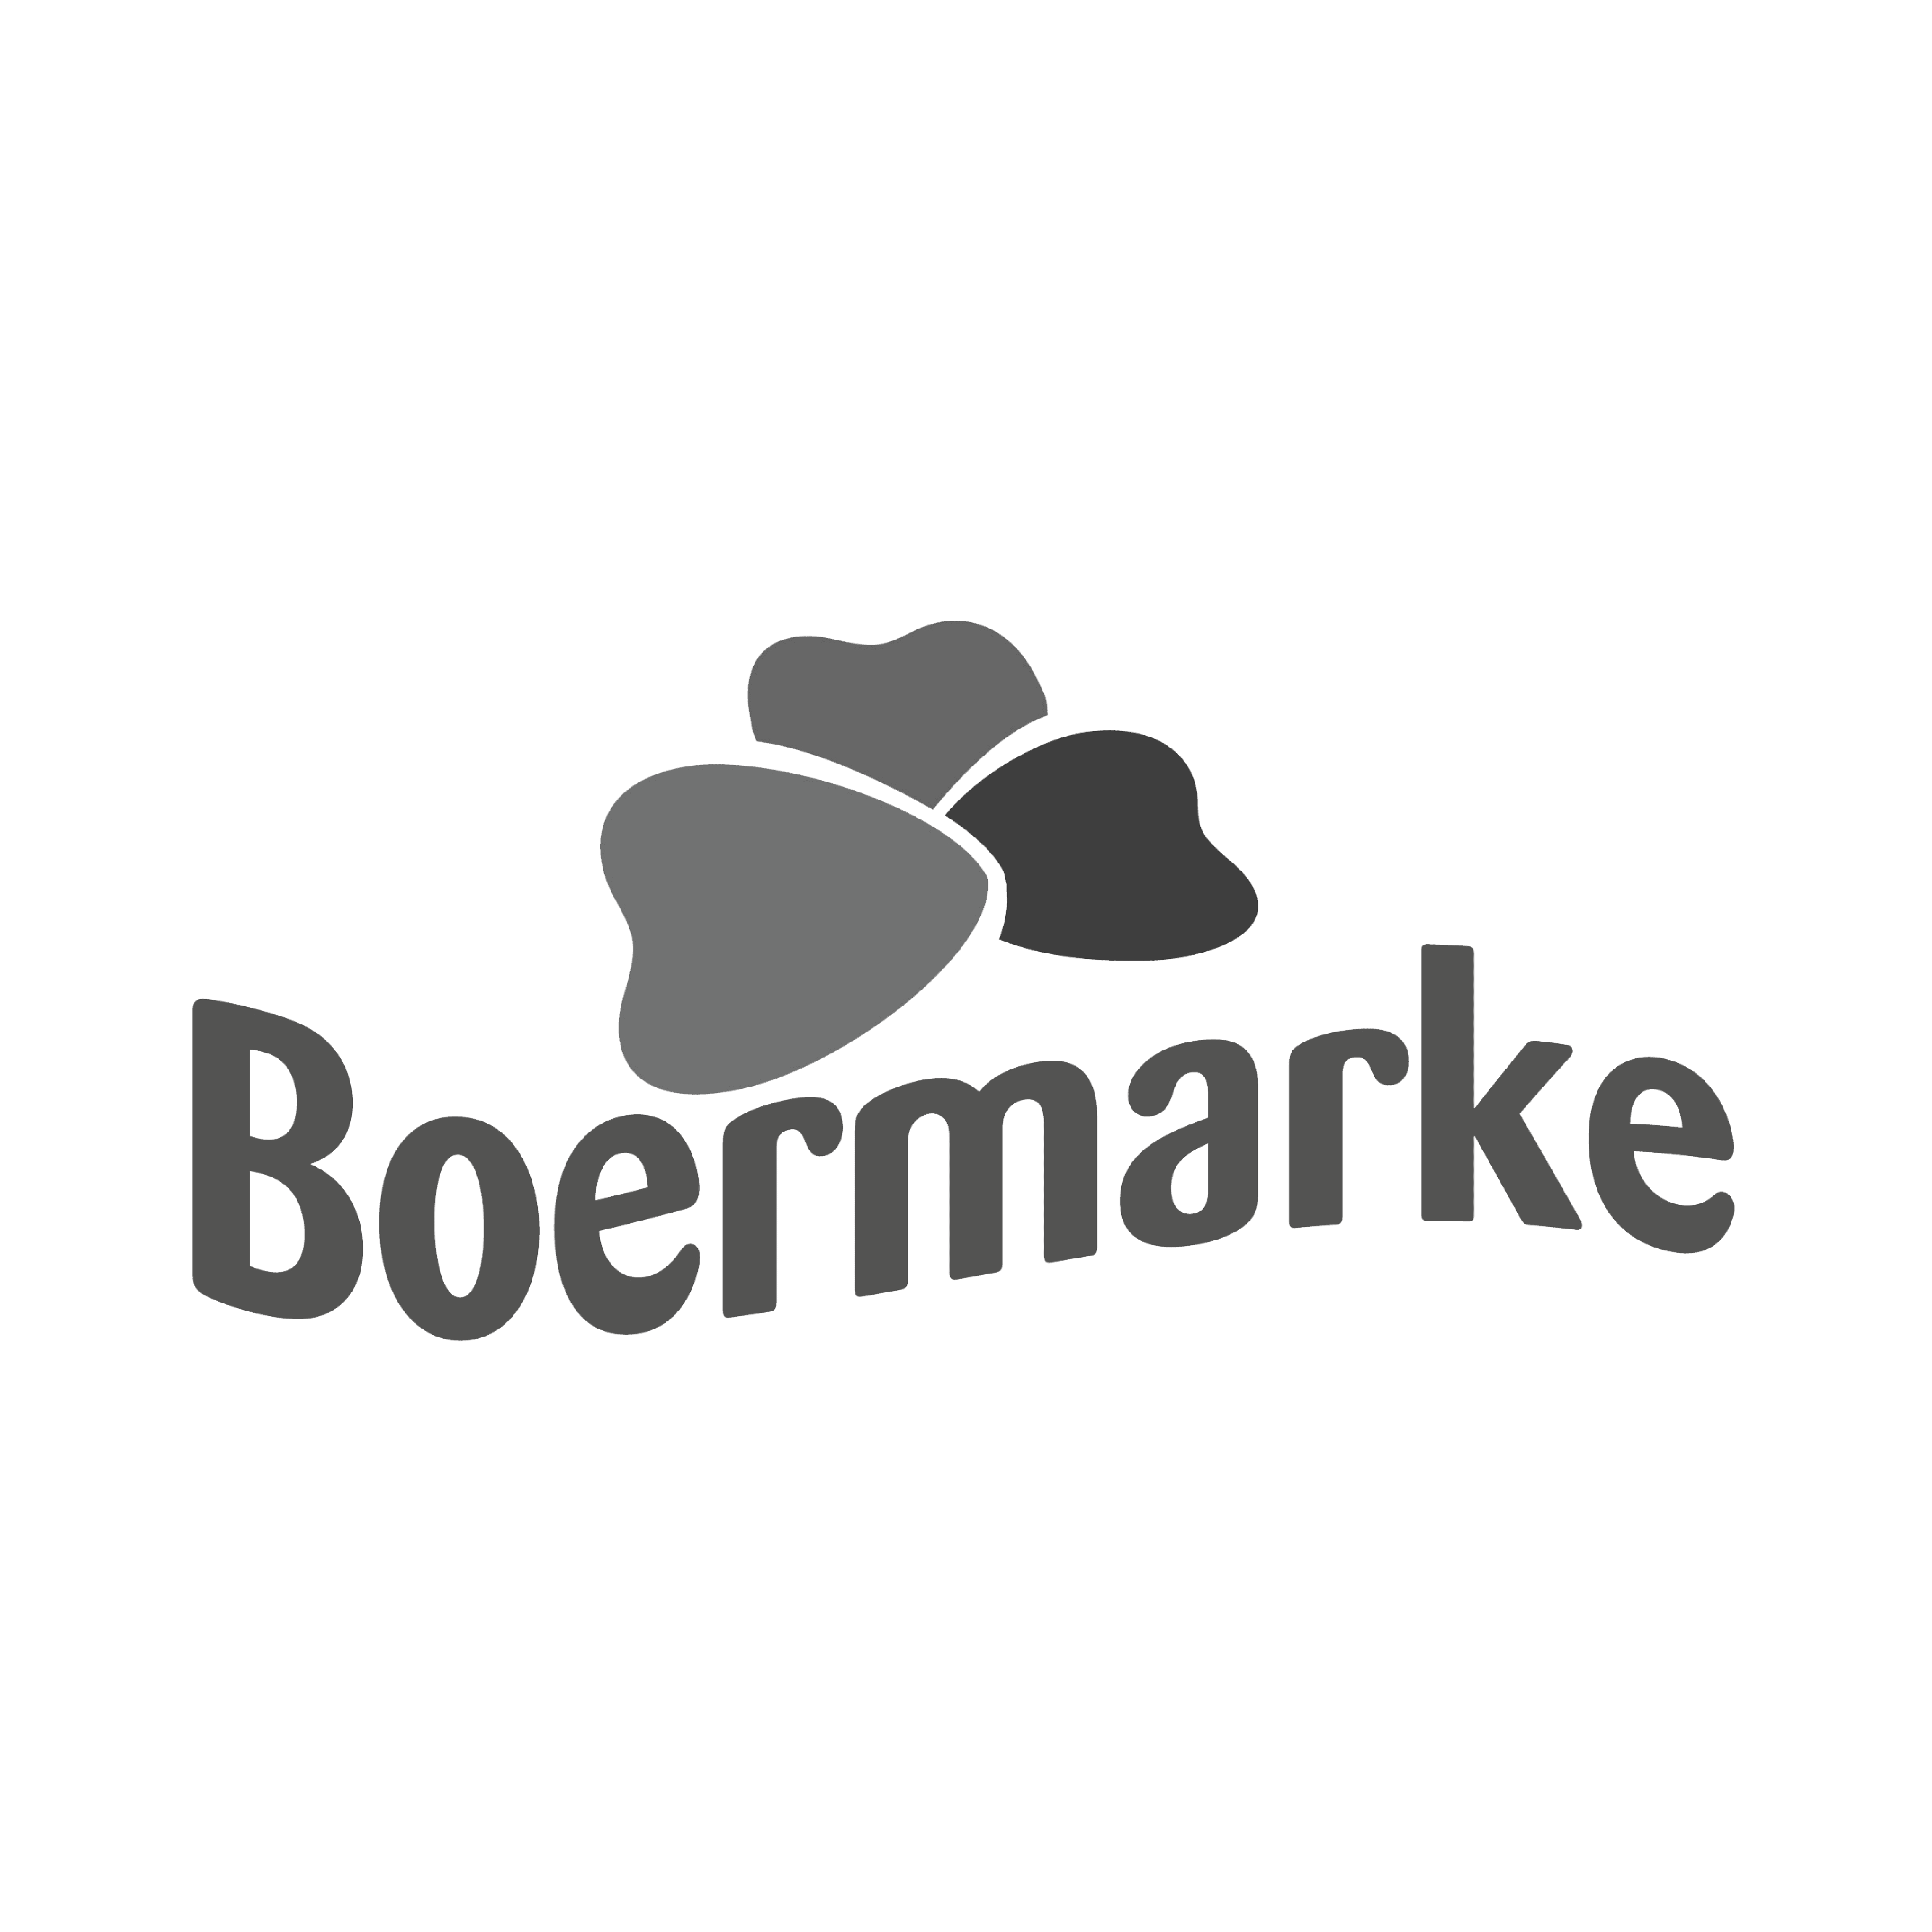 Boermarke_1000x1000-1